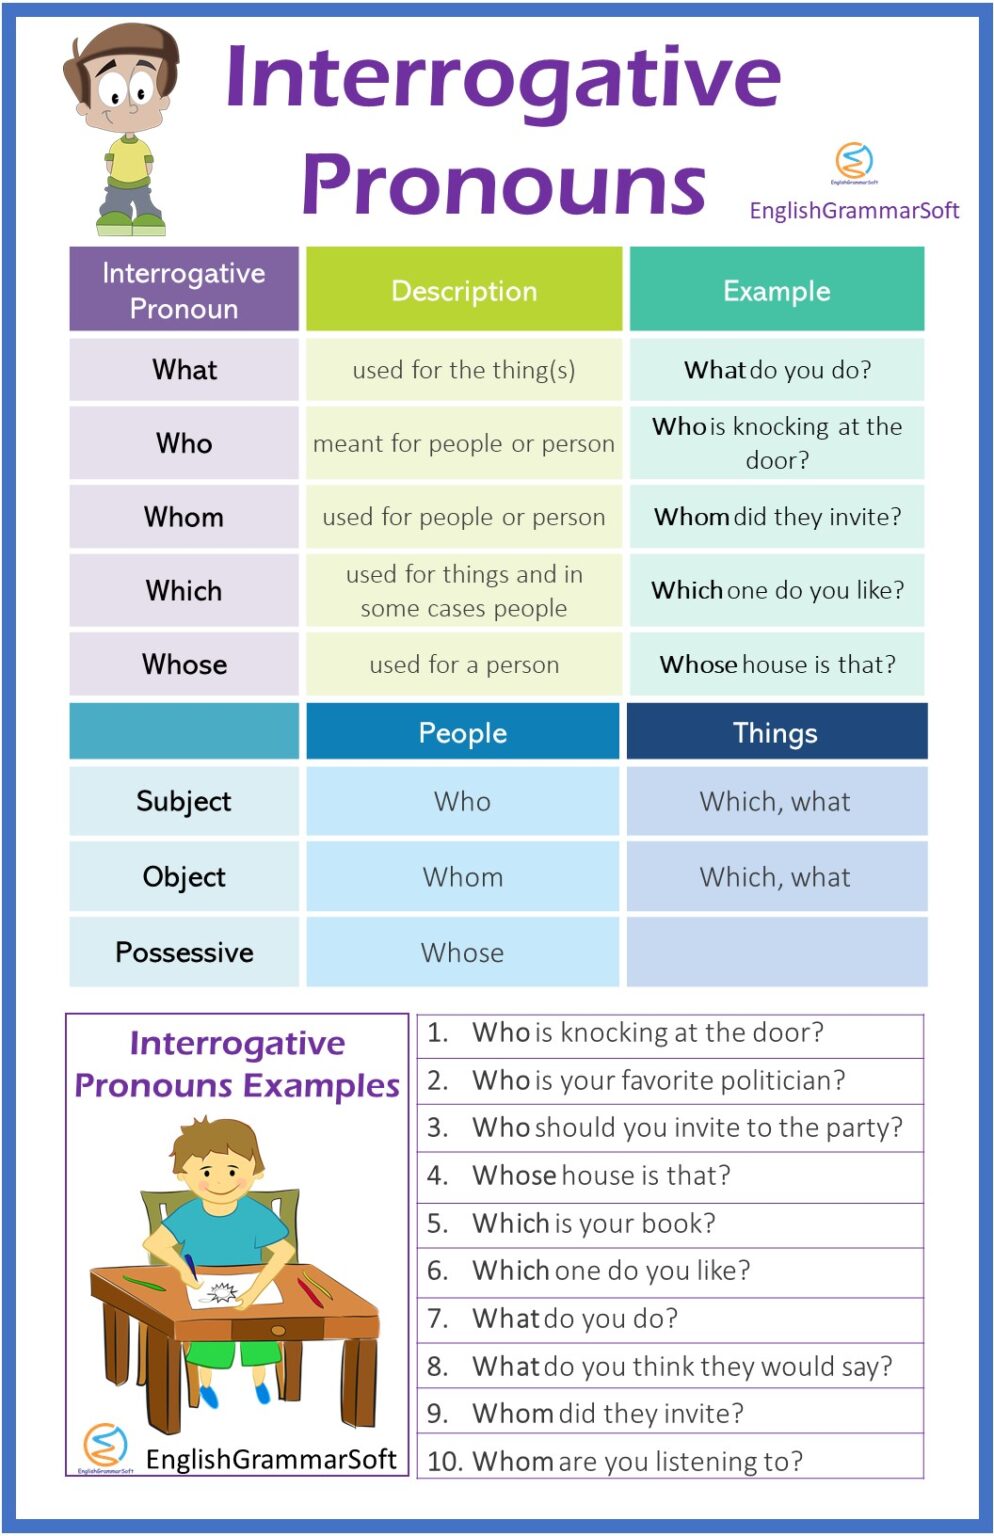 interrogative-pronoun-definition-examples-rules-egrammatics